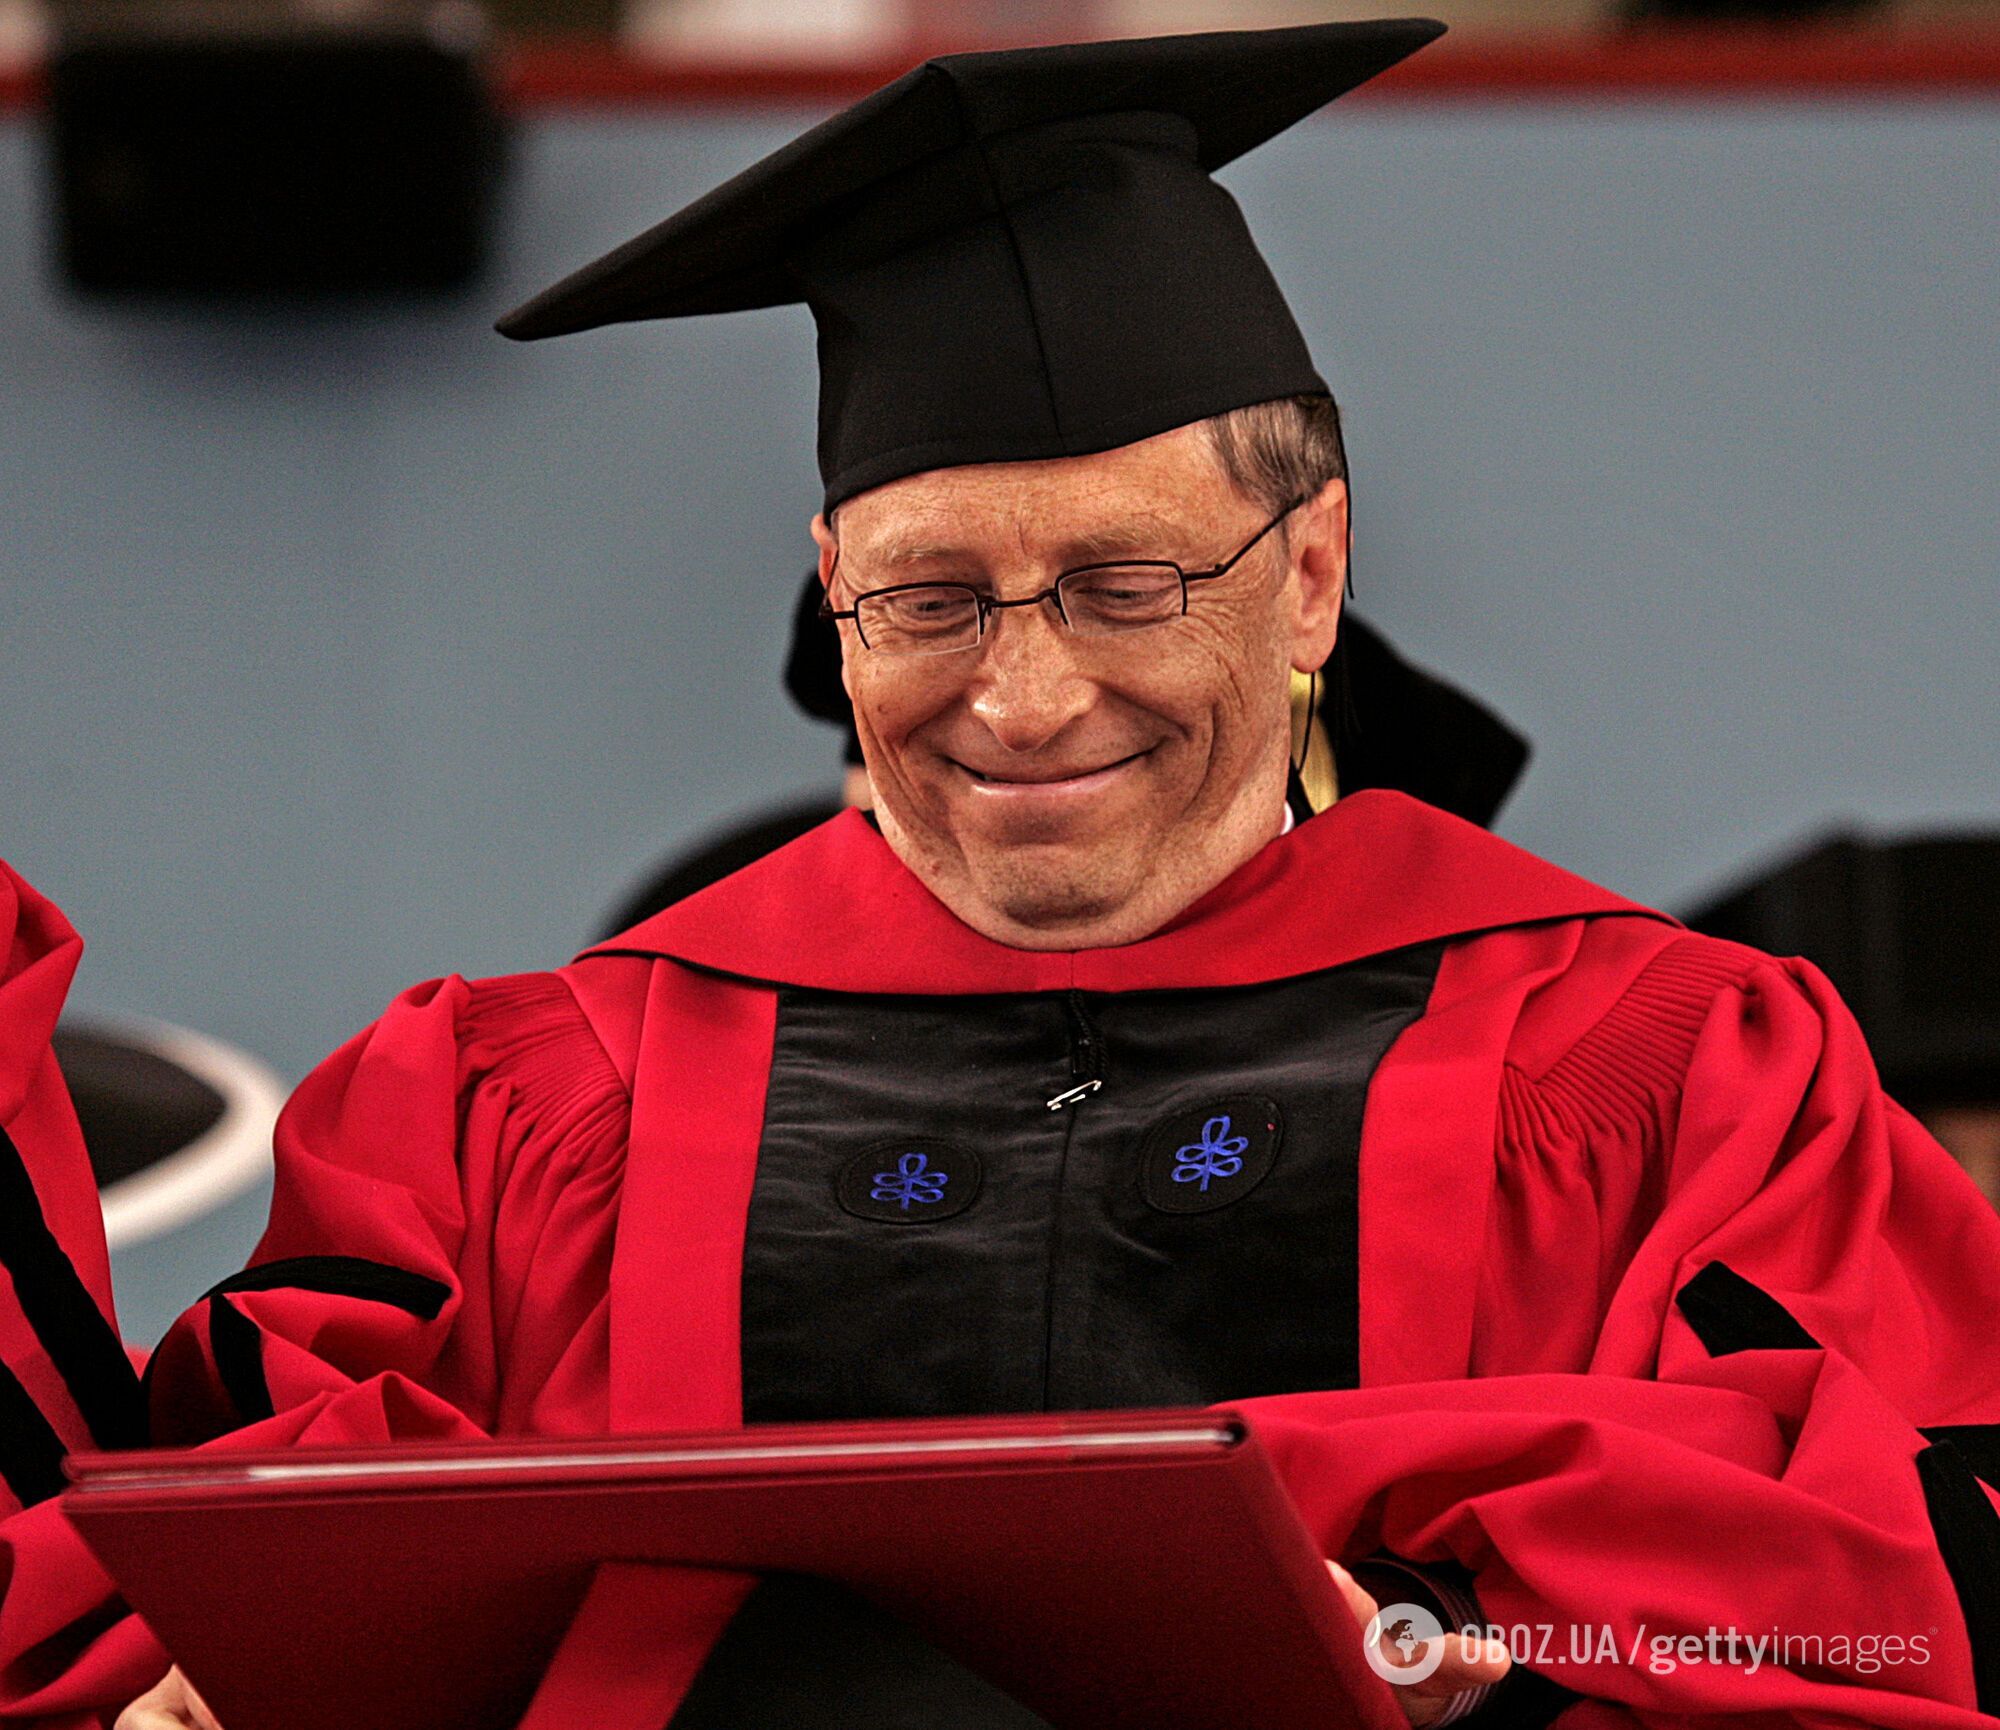 На церемонии Гейтс произнес речь, ставшую знаменитой